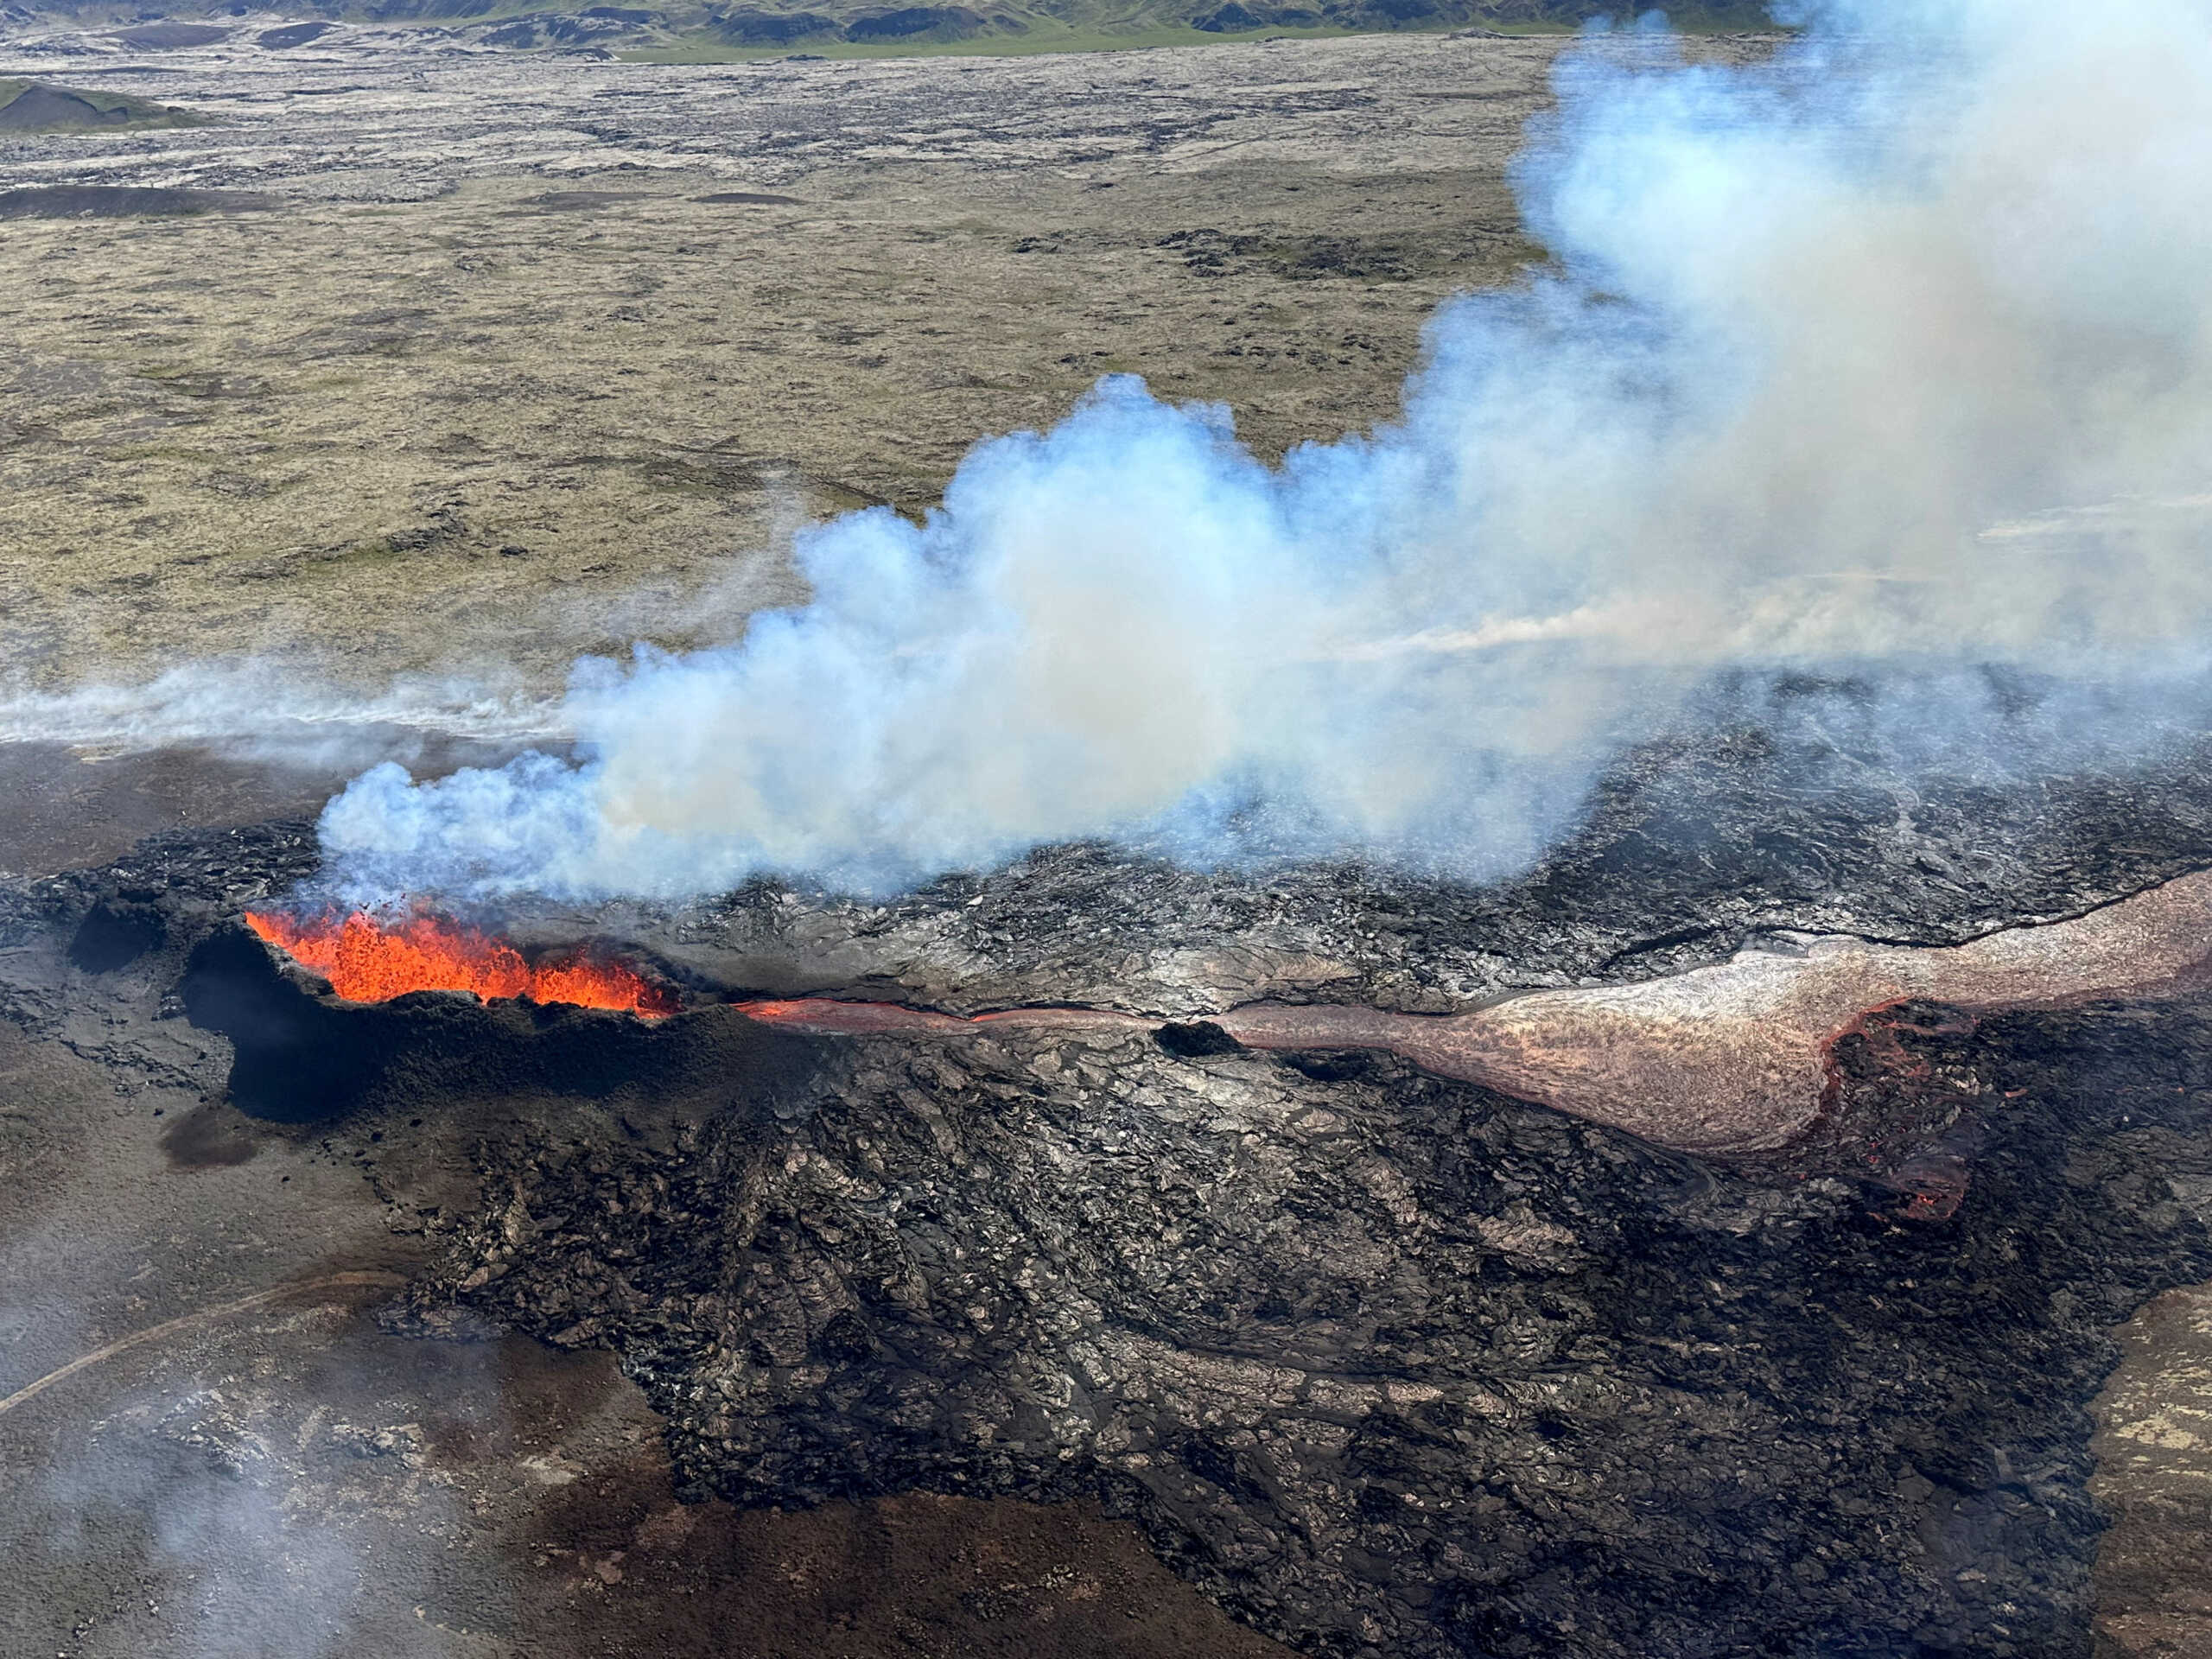 Ισλανδία: Εντυπωσιακές εικόνες από το ηφαίστειο στην Γκρίνταβικ – Σε κατάσταση συναγερμού πόλη 4.000 κατοίκων